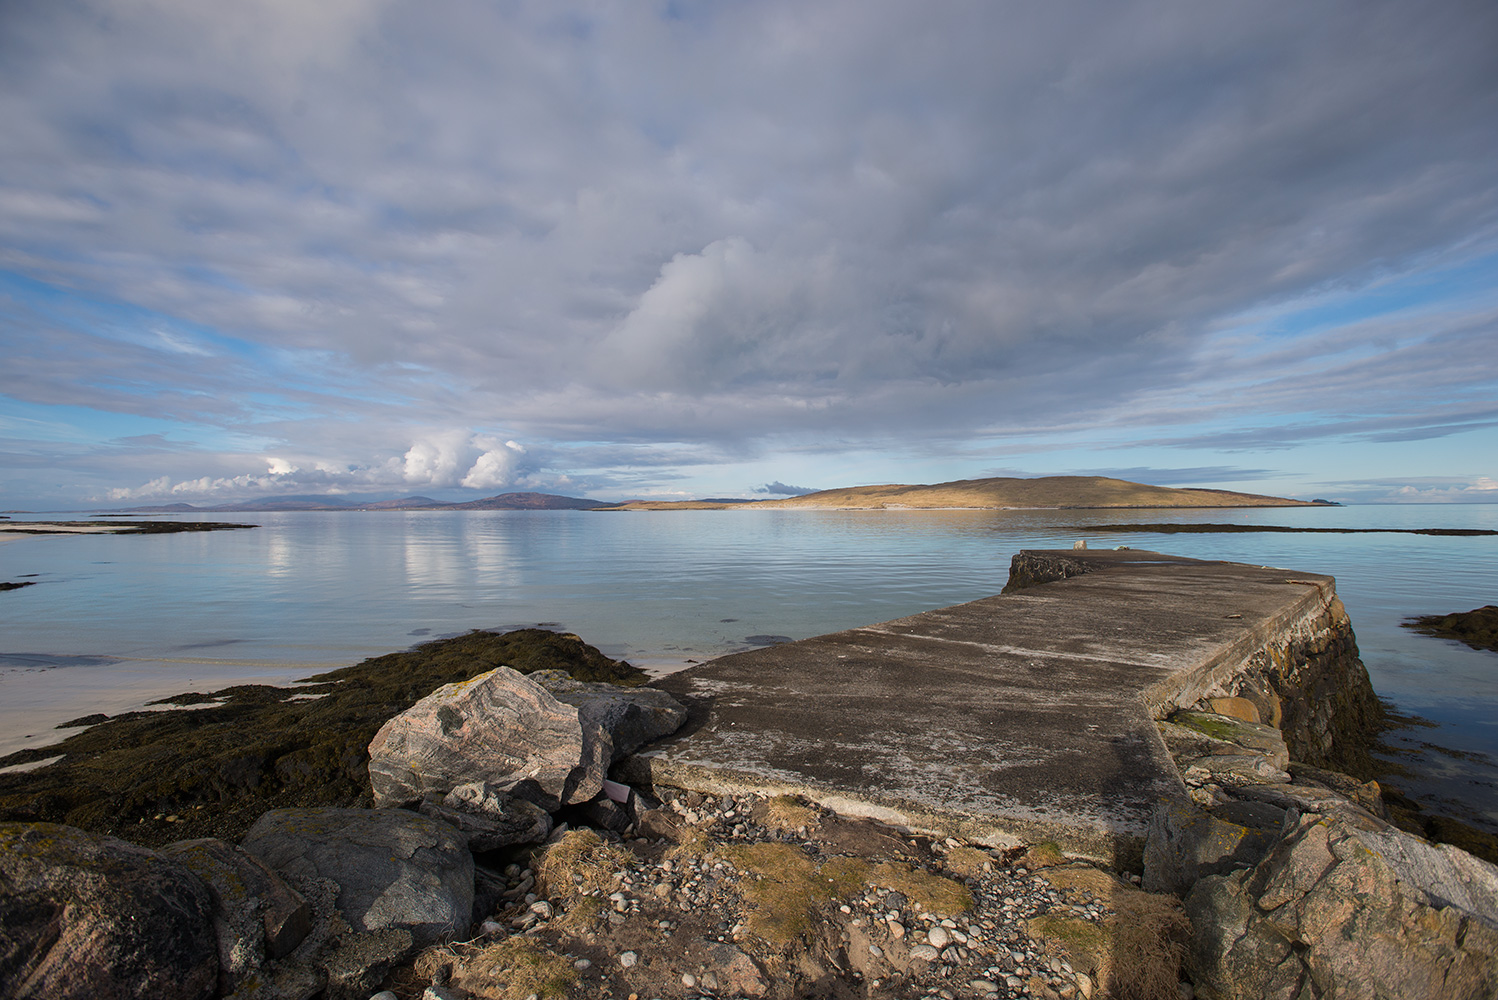 The jetty at Cidhe Eolaigearraidh